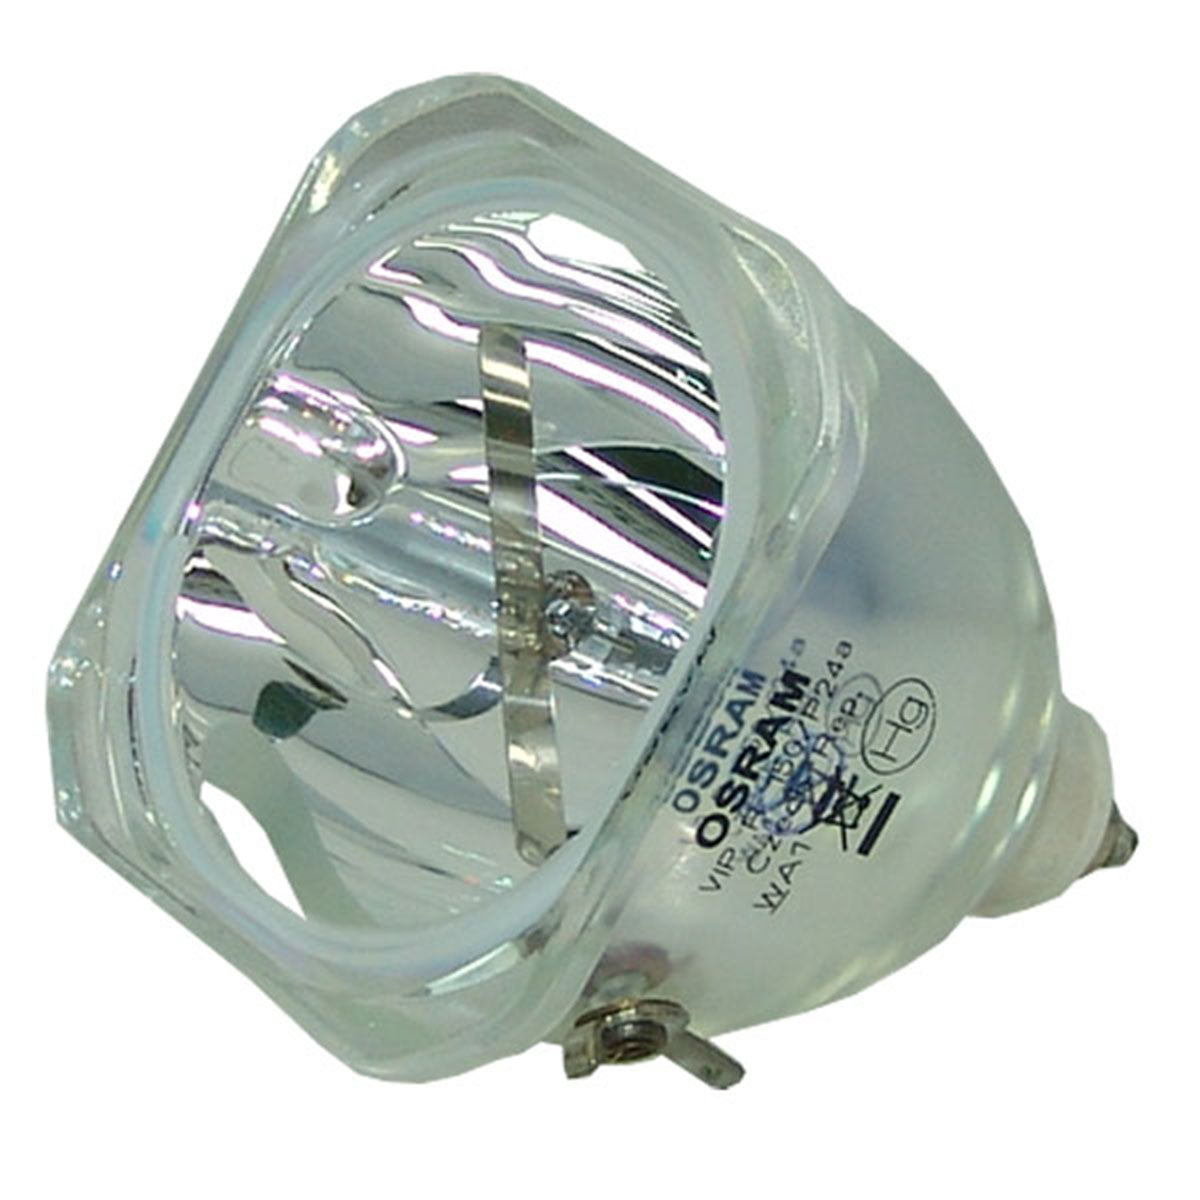 Yamaha 28-640 Osram Projector Bare Lamp